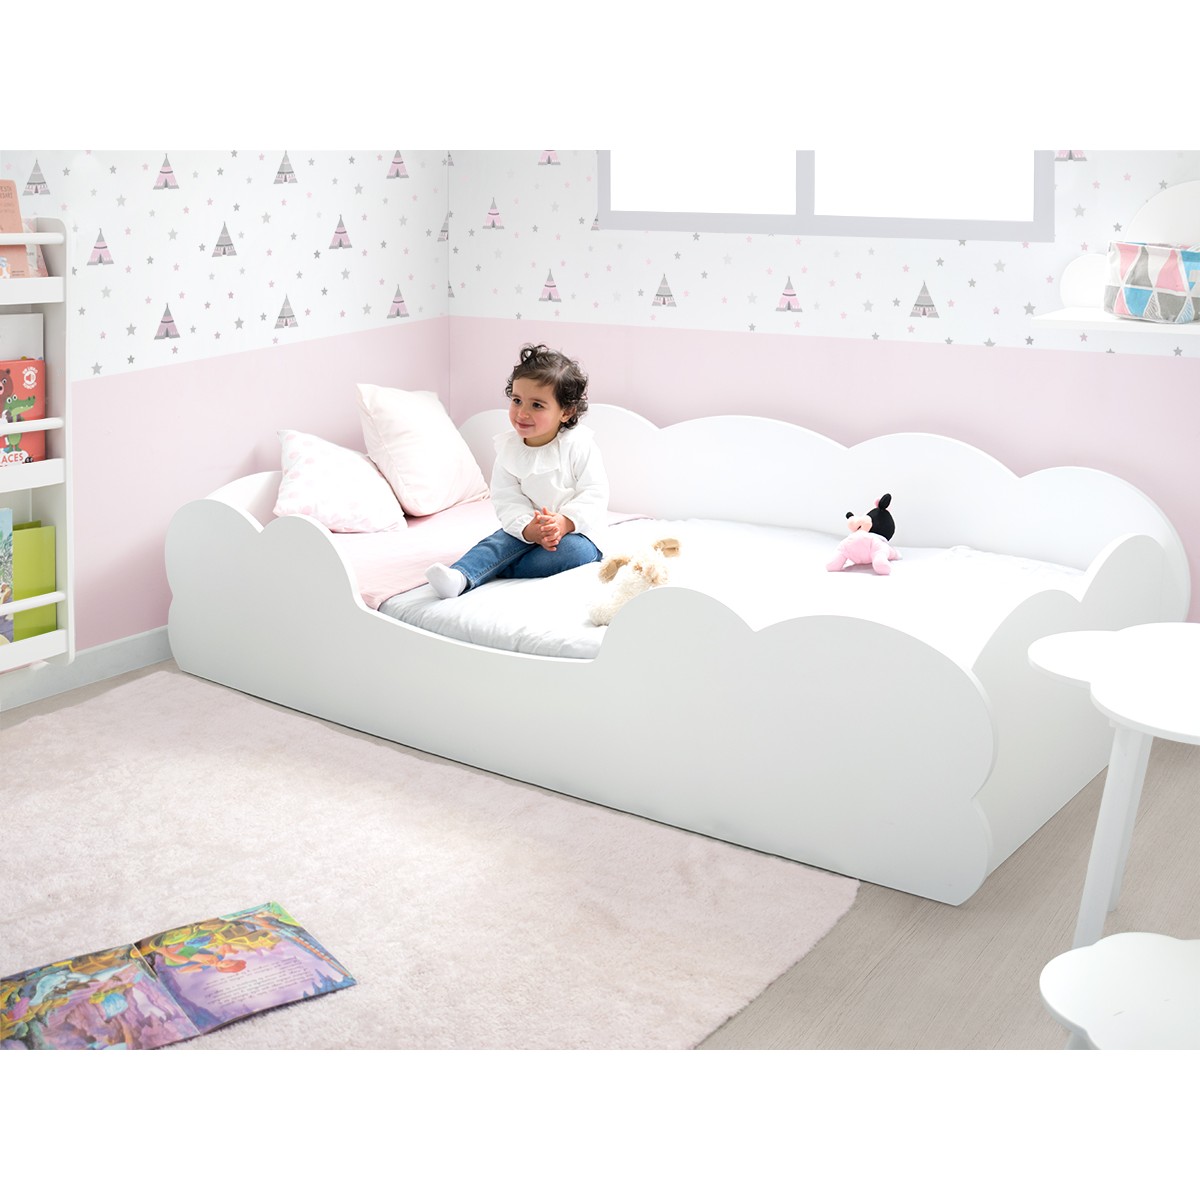 Chambre enfant Montessori Nuage - Livraison gratuite